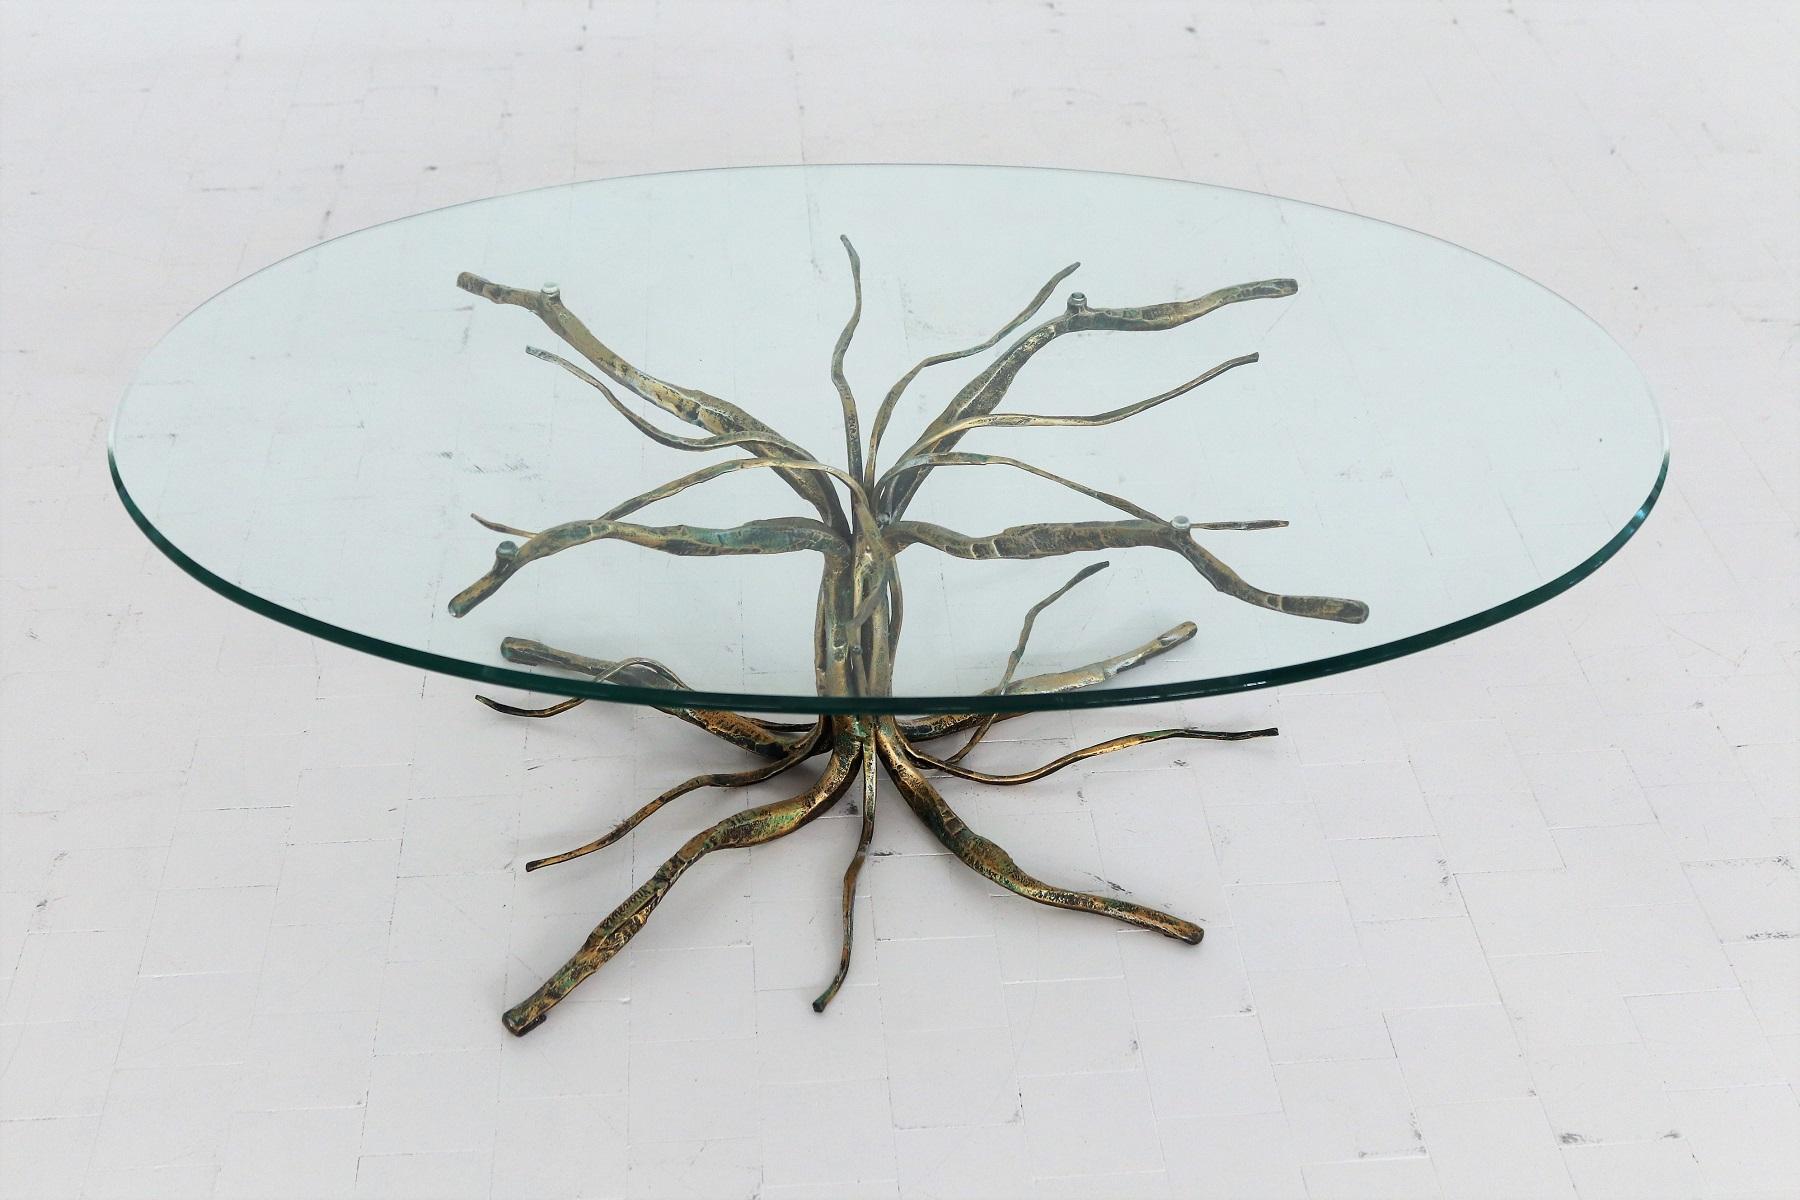 Magnifique table basse fabriquée à la main par l'artiste et sculpteur italien Salvino Marsura, décédé en mai 2020.
La table basse présente un arbre étonnant en fer forgé doré.
Le dessus est en verre de cristal d'origine avec un bord coupé.

La table